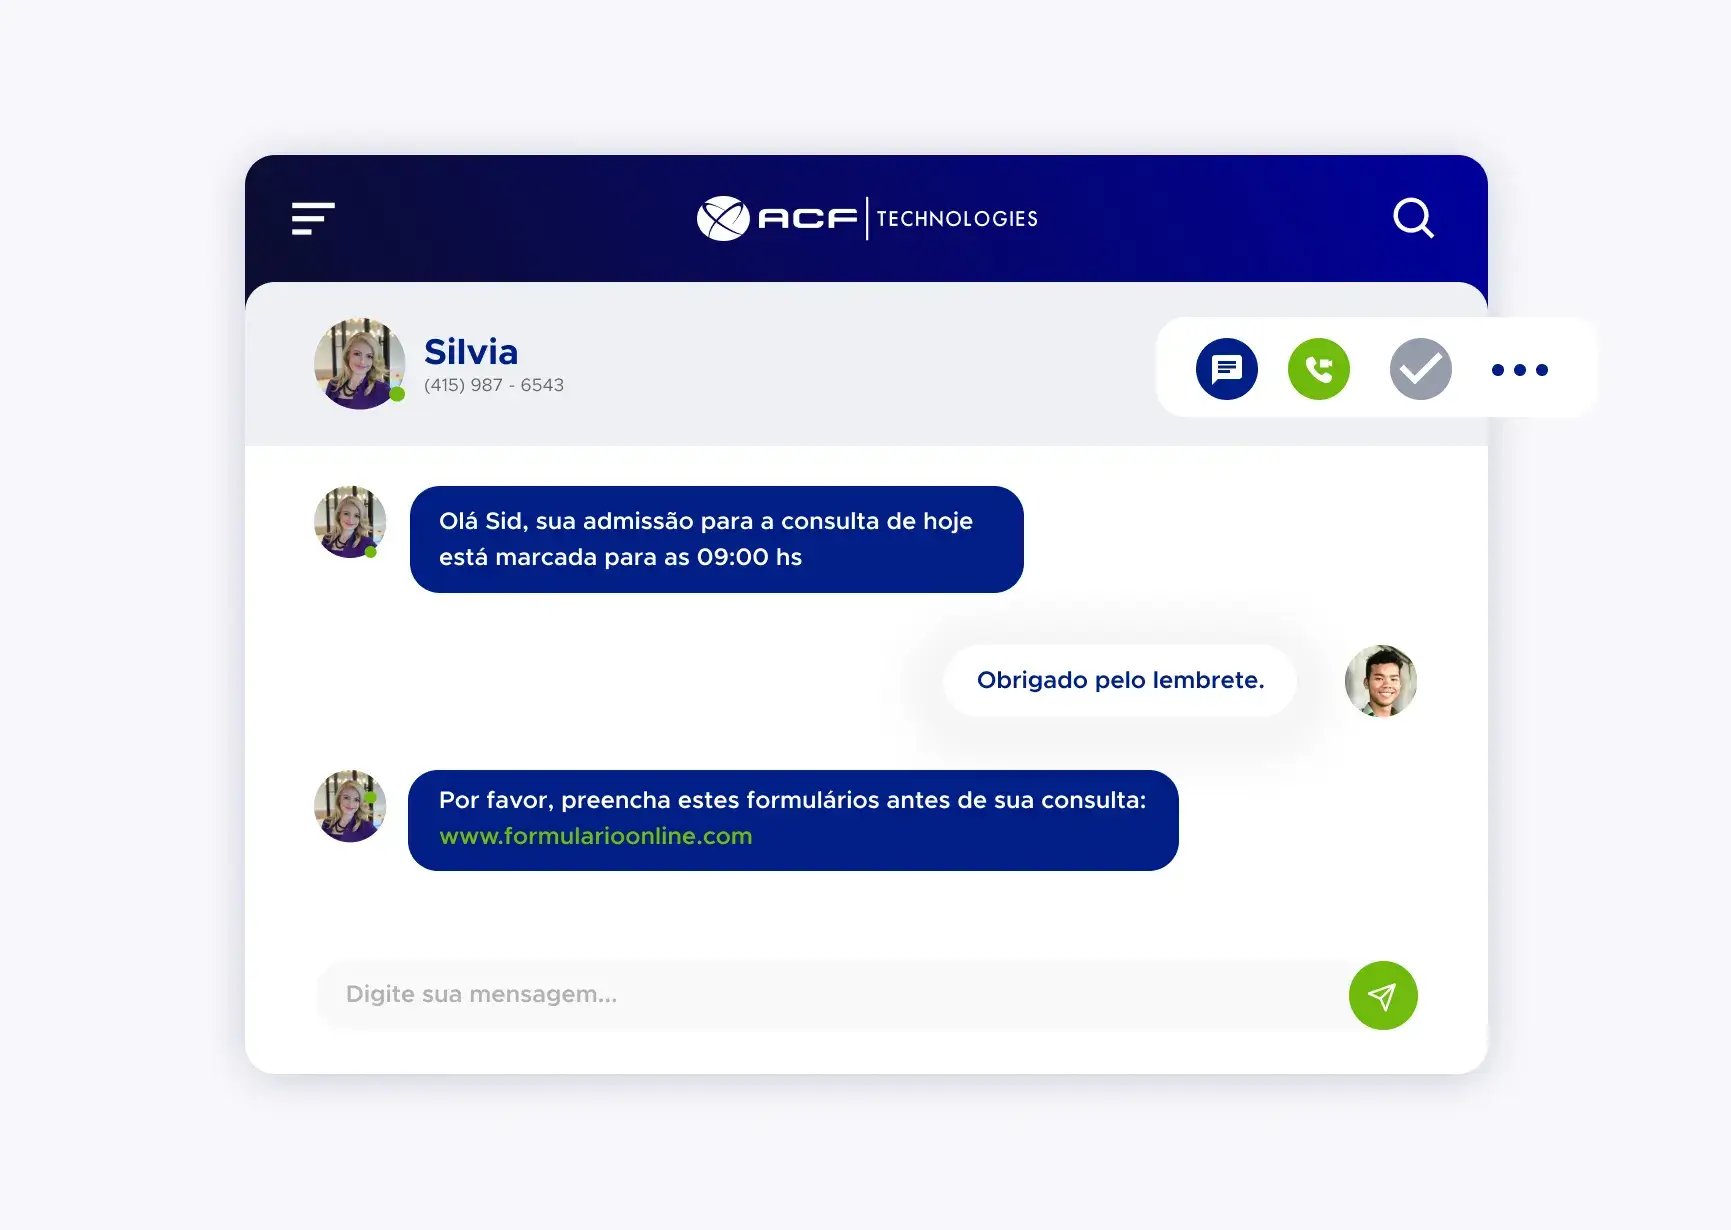 Simulação de uma conversa usando a plataforma ACF Technologies